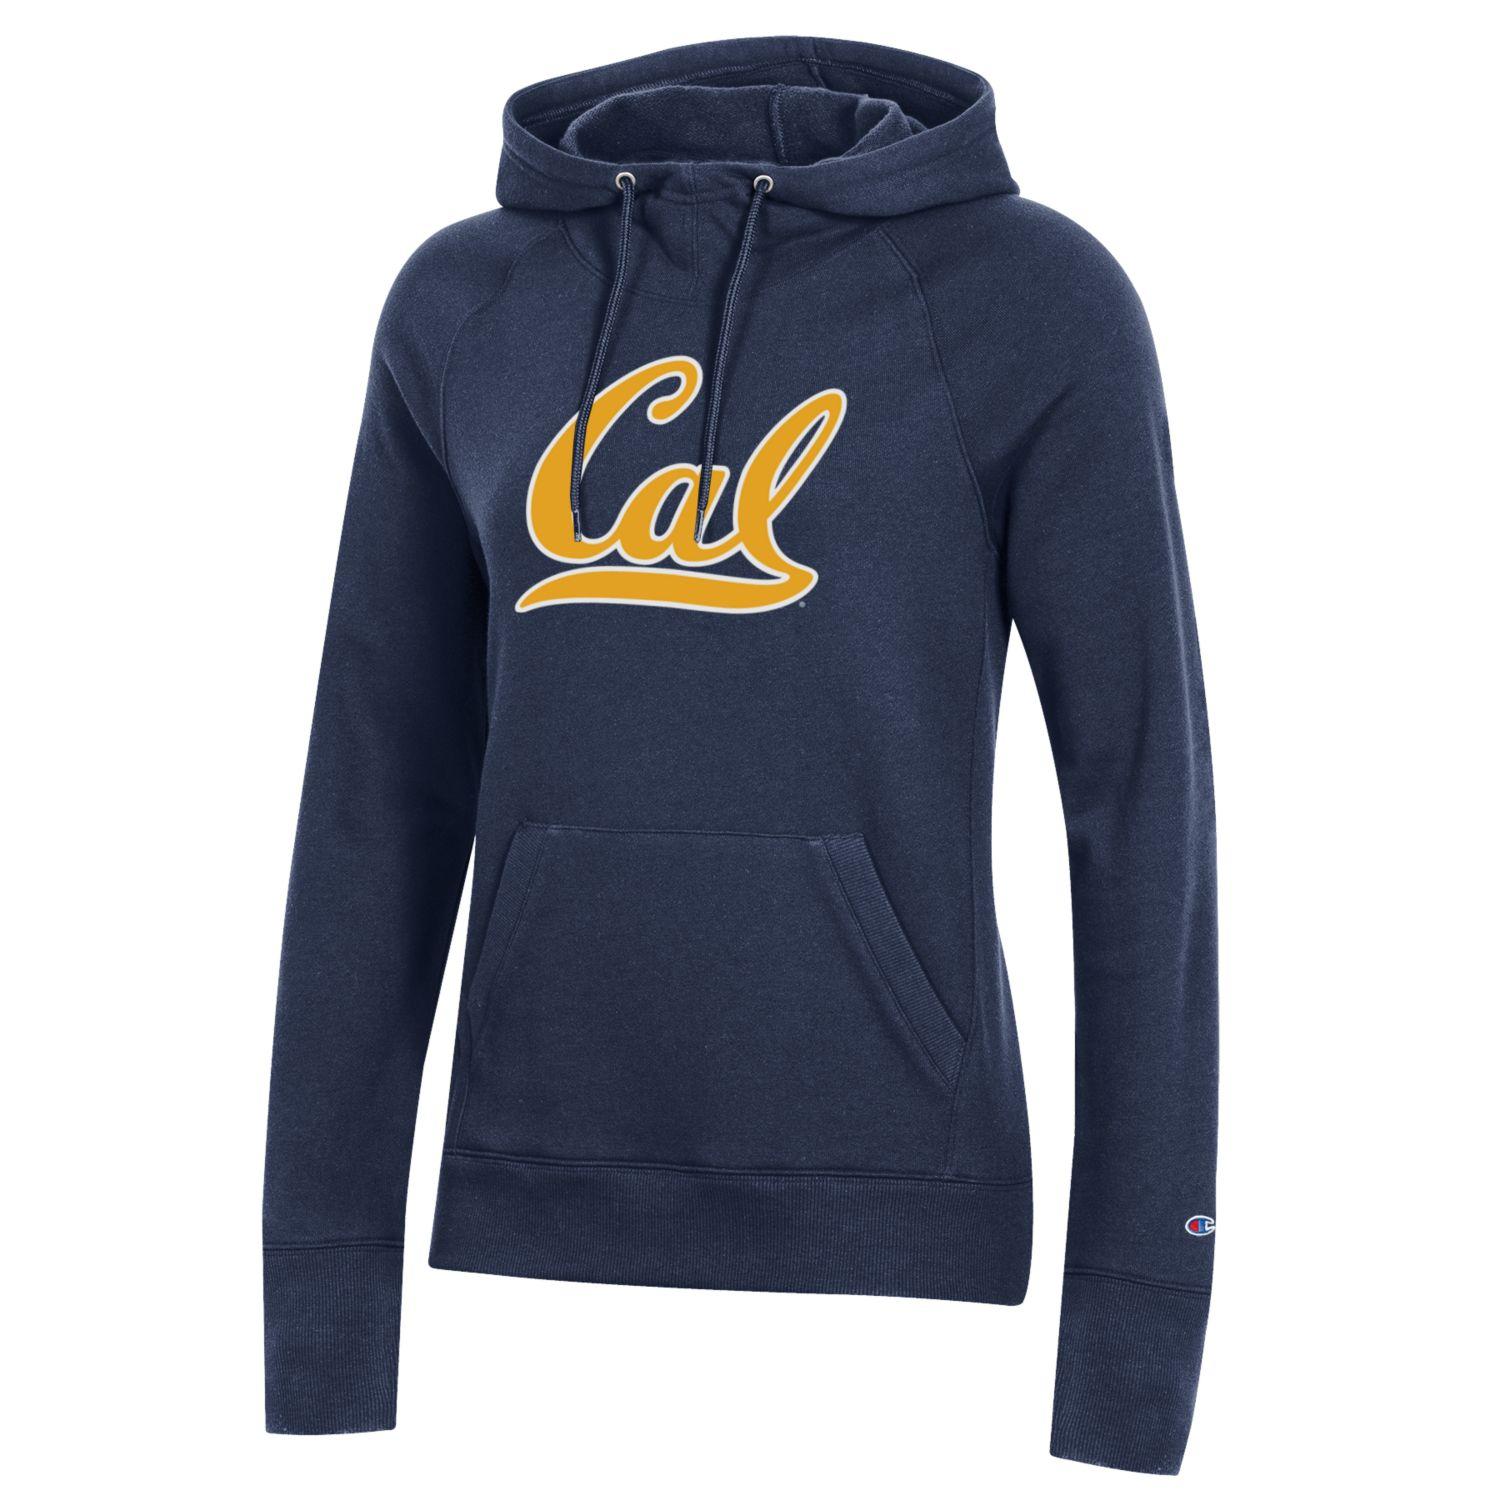 U.C. Berkeley Cal women's University Hoodie sweatshirt-Navy-Shop College Wear